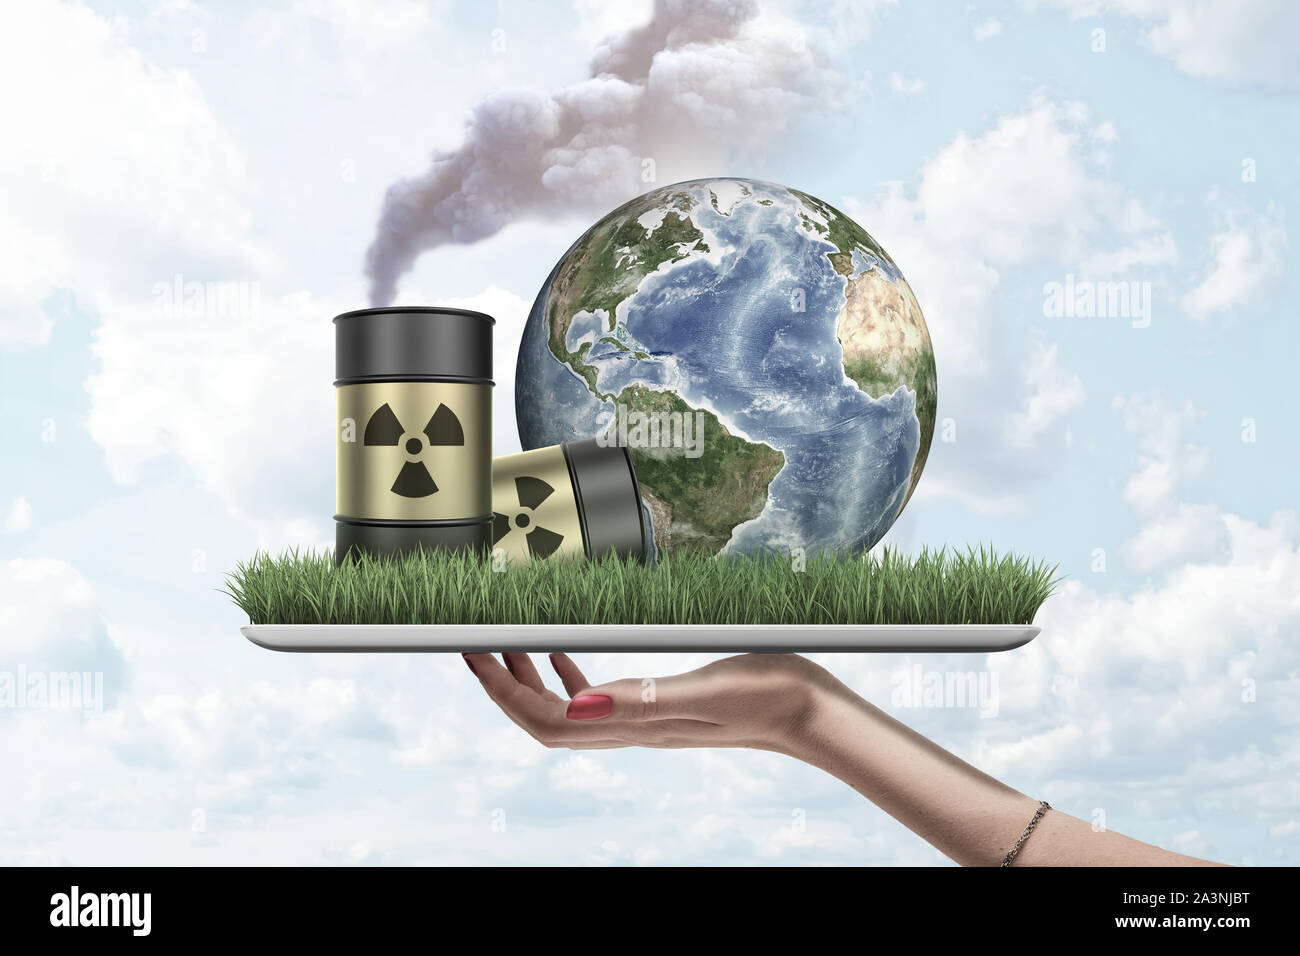 La mano que sostiene la mujer tableta digital con hierba verde, el planeta Tierra y dos barriles de desechos radiactivos coloca en pantalla, contra el cielo nublado. Foto de stock